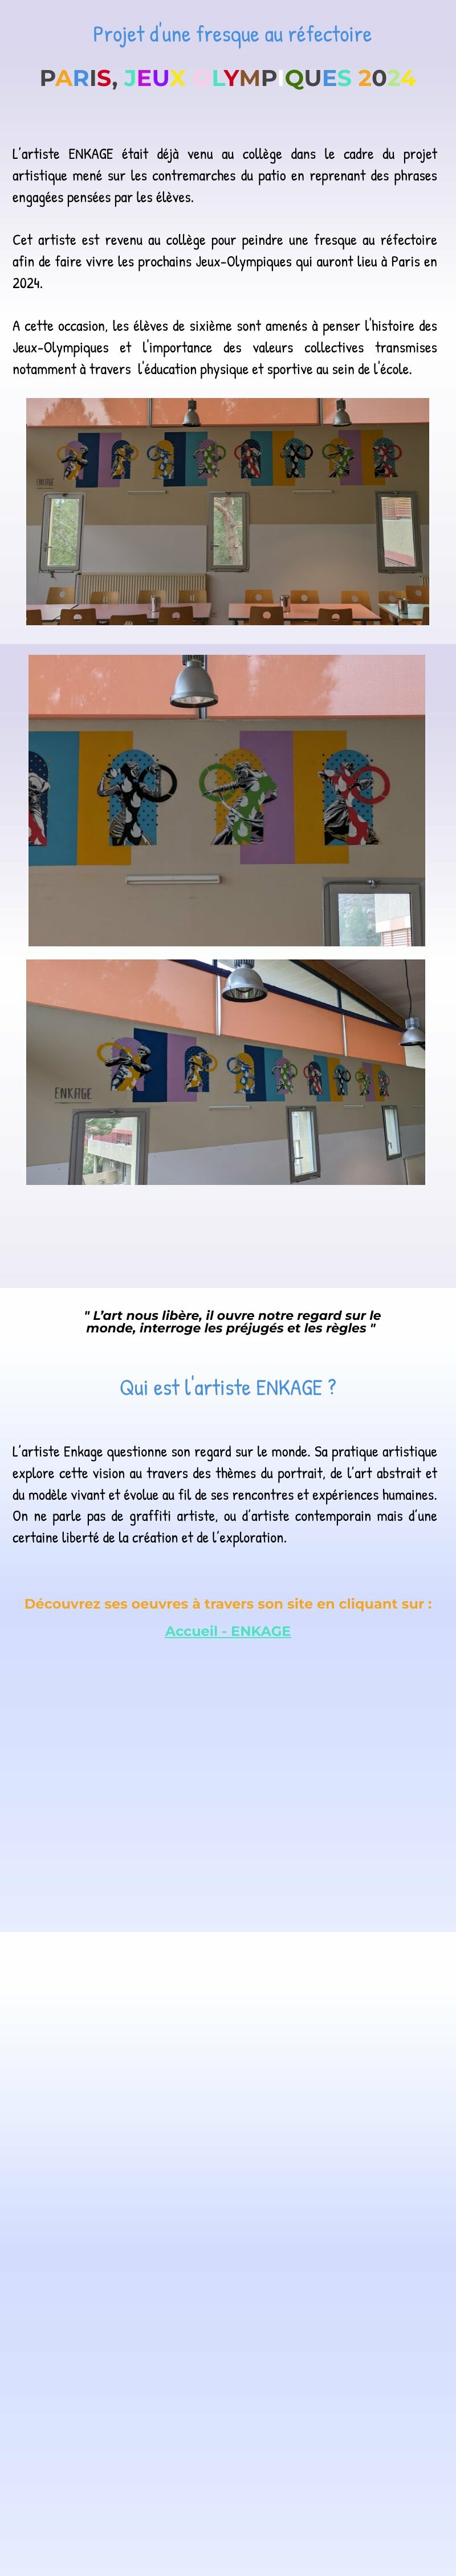 CLIQUEZ ICI pour découvrir le projet artistique de l'artiste ENKAGE au réfectoire 